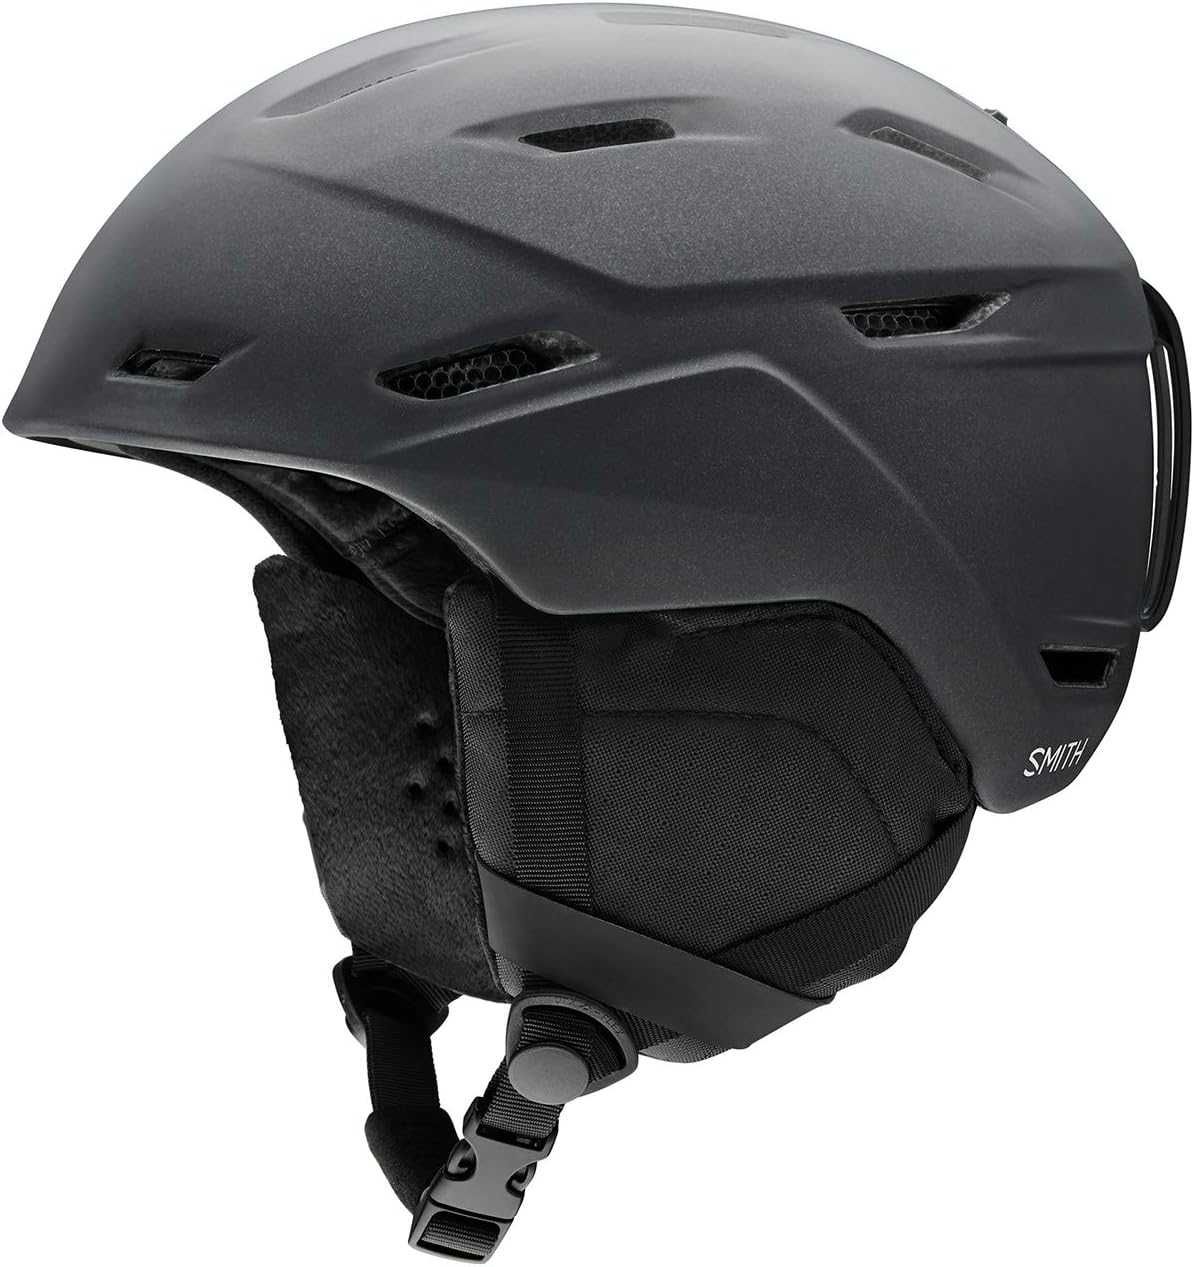 Нова дамска каска-шлем за ски/сноуборд Smith MIRAGE,M,55-59,черна